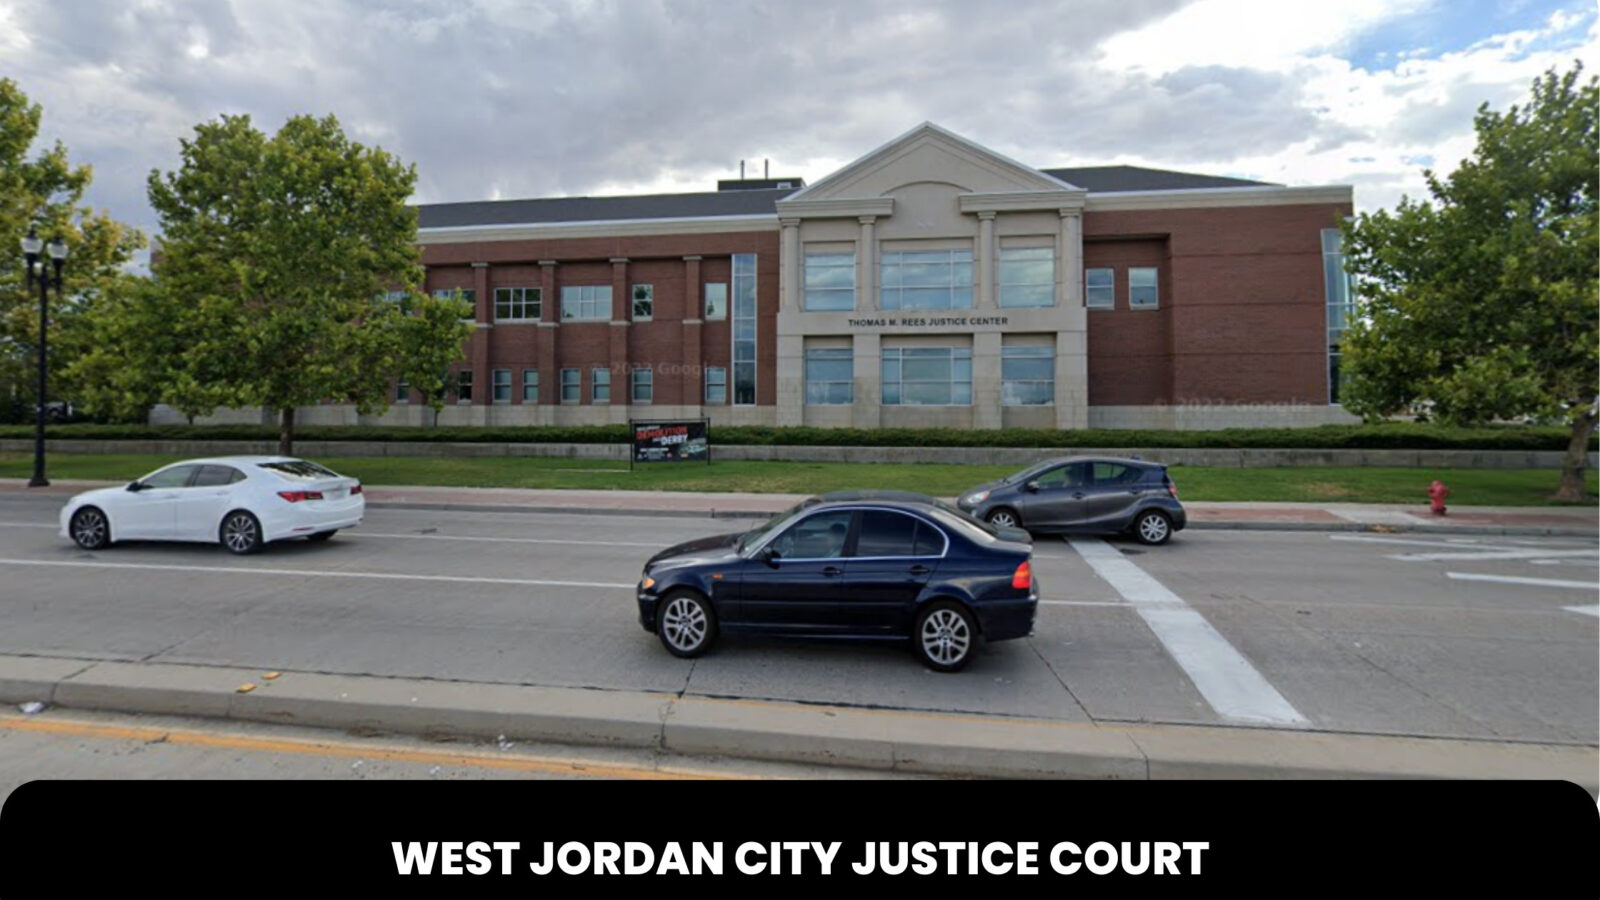 West Jordan City Justice Court